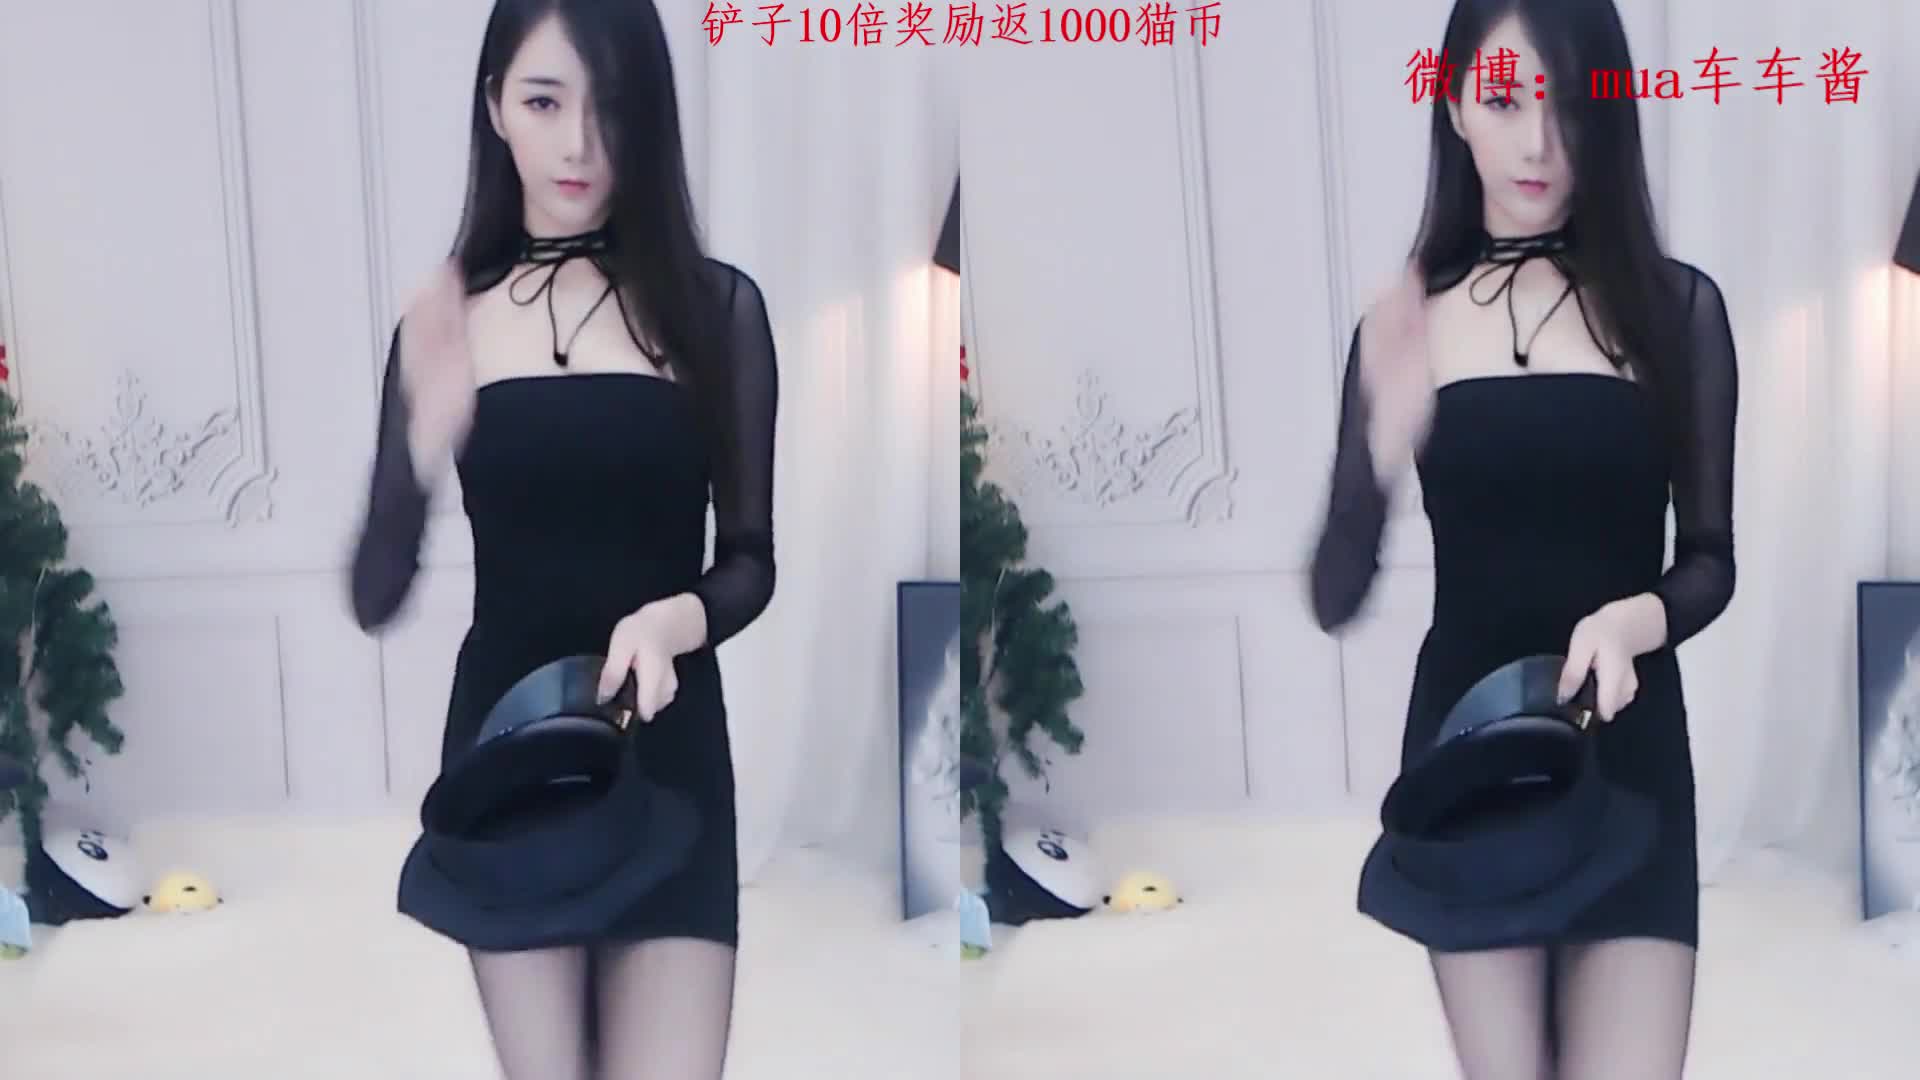 熊猫直播 熊猫艺能大人 PandaTV 2019-02-11 mua车车酱 开火车 1080P  Chinese live cam girl SEXY DANCE